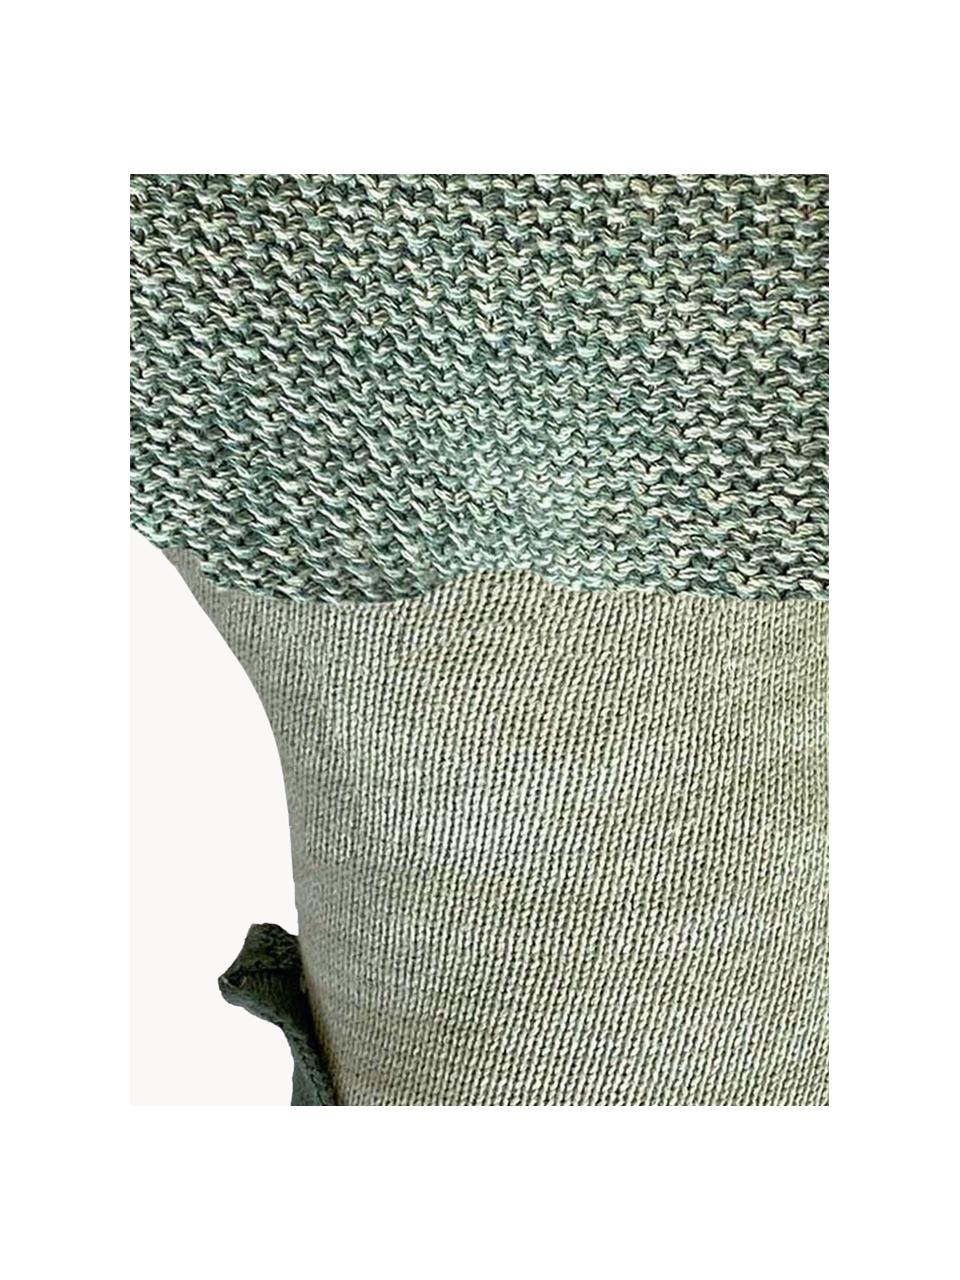 Ručně pletený měkký bavlněný polštářek Brucy the Btoccoli, Šalvějově zelená, Š 35 cm, D 35 cm